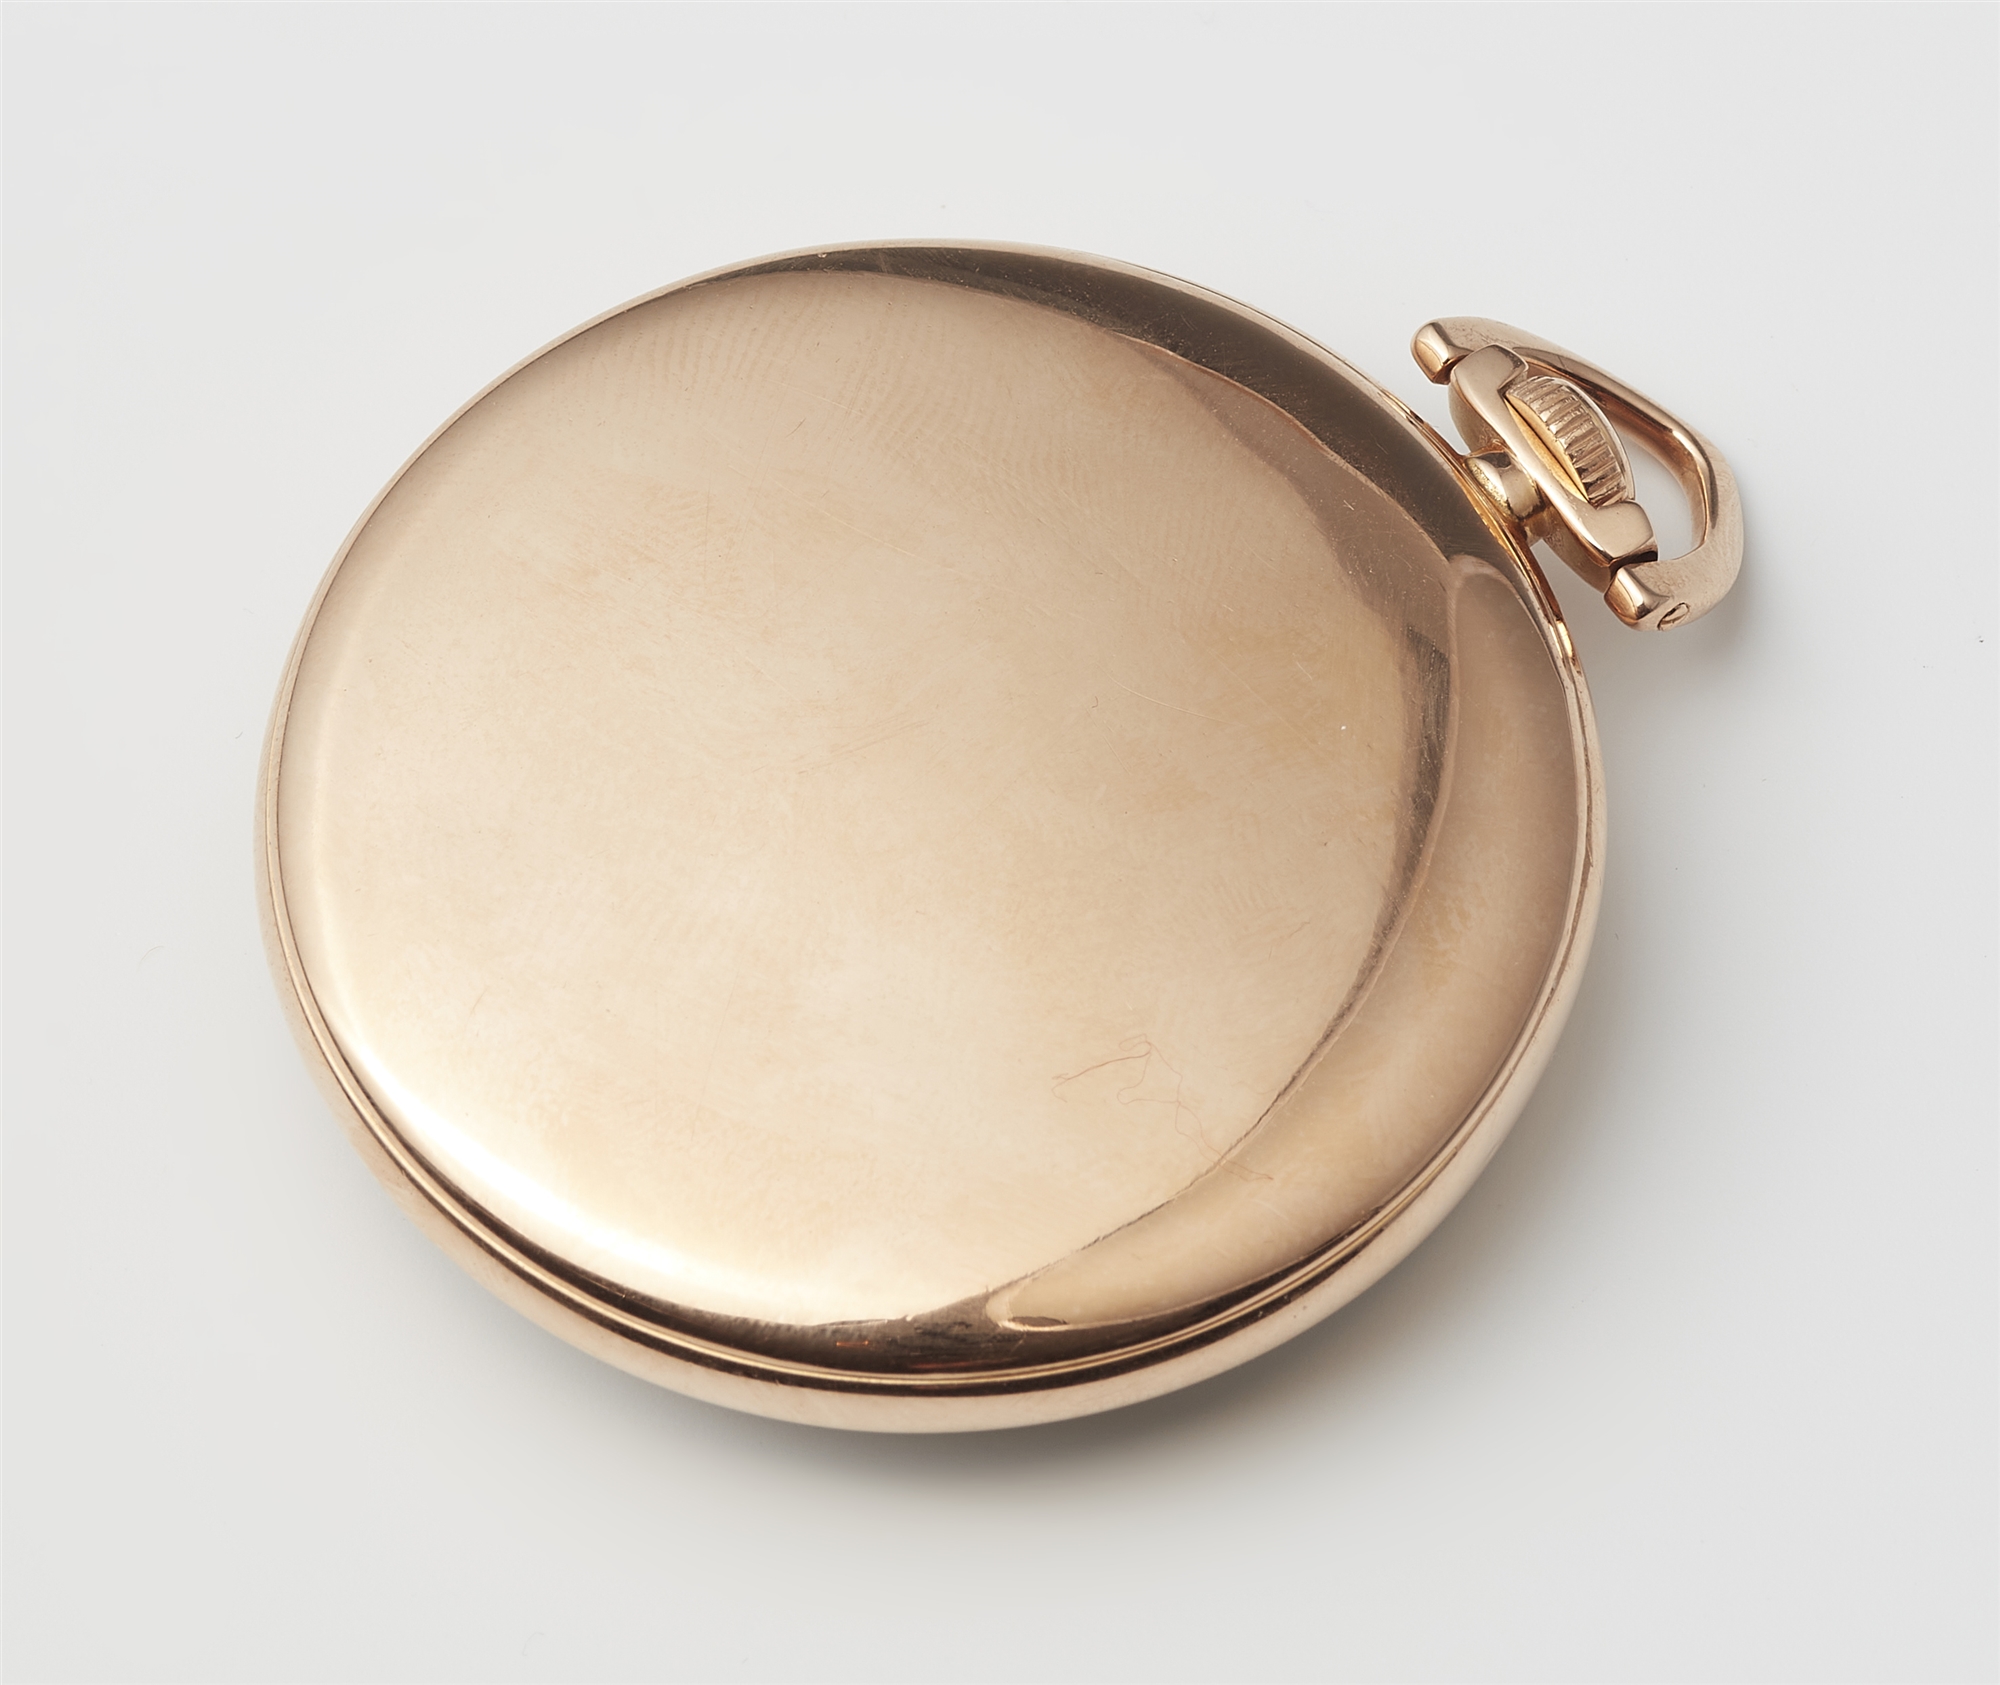 An 18k rose gold Omega Lepine pocket watch. - Image 2 of 2